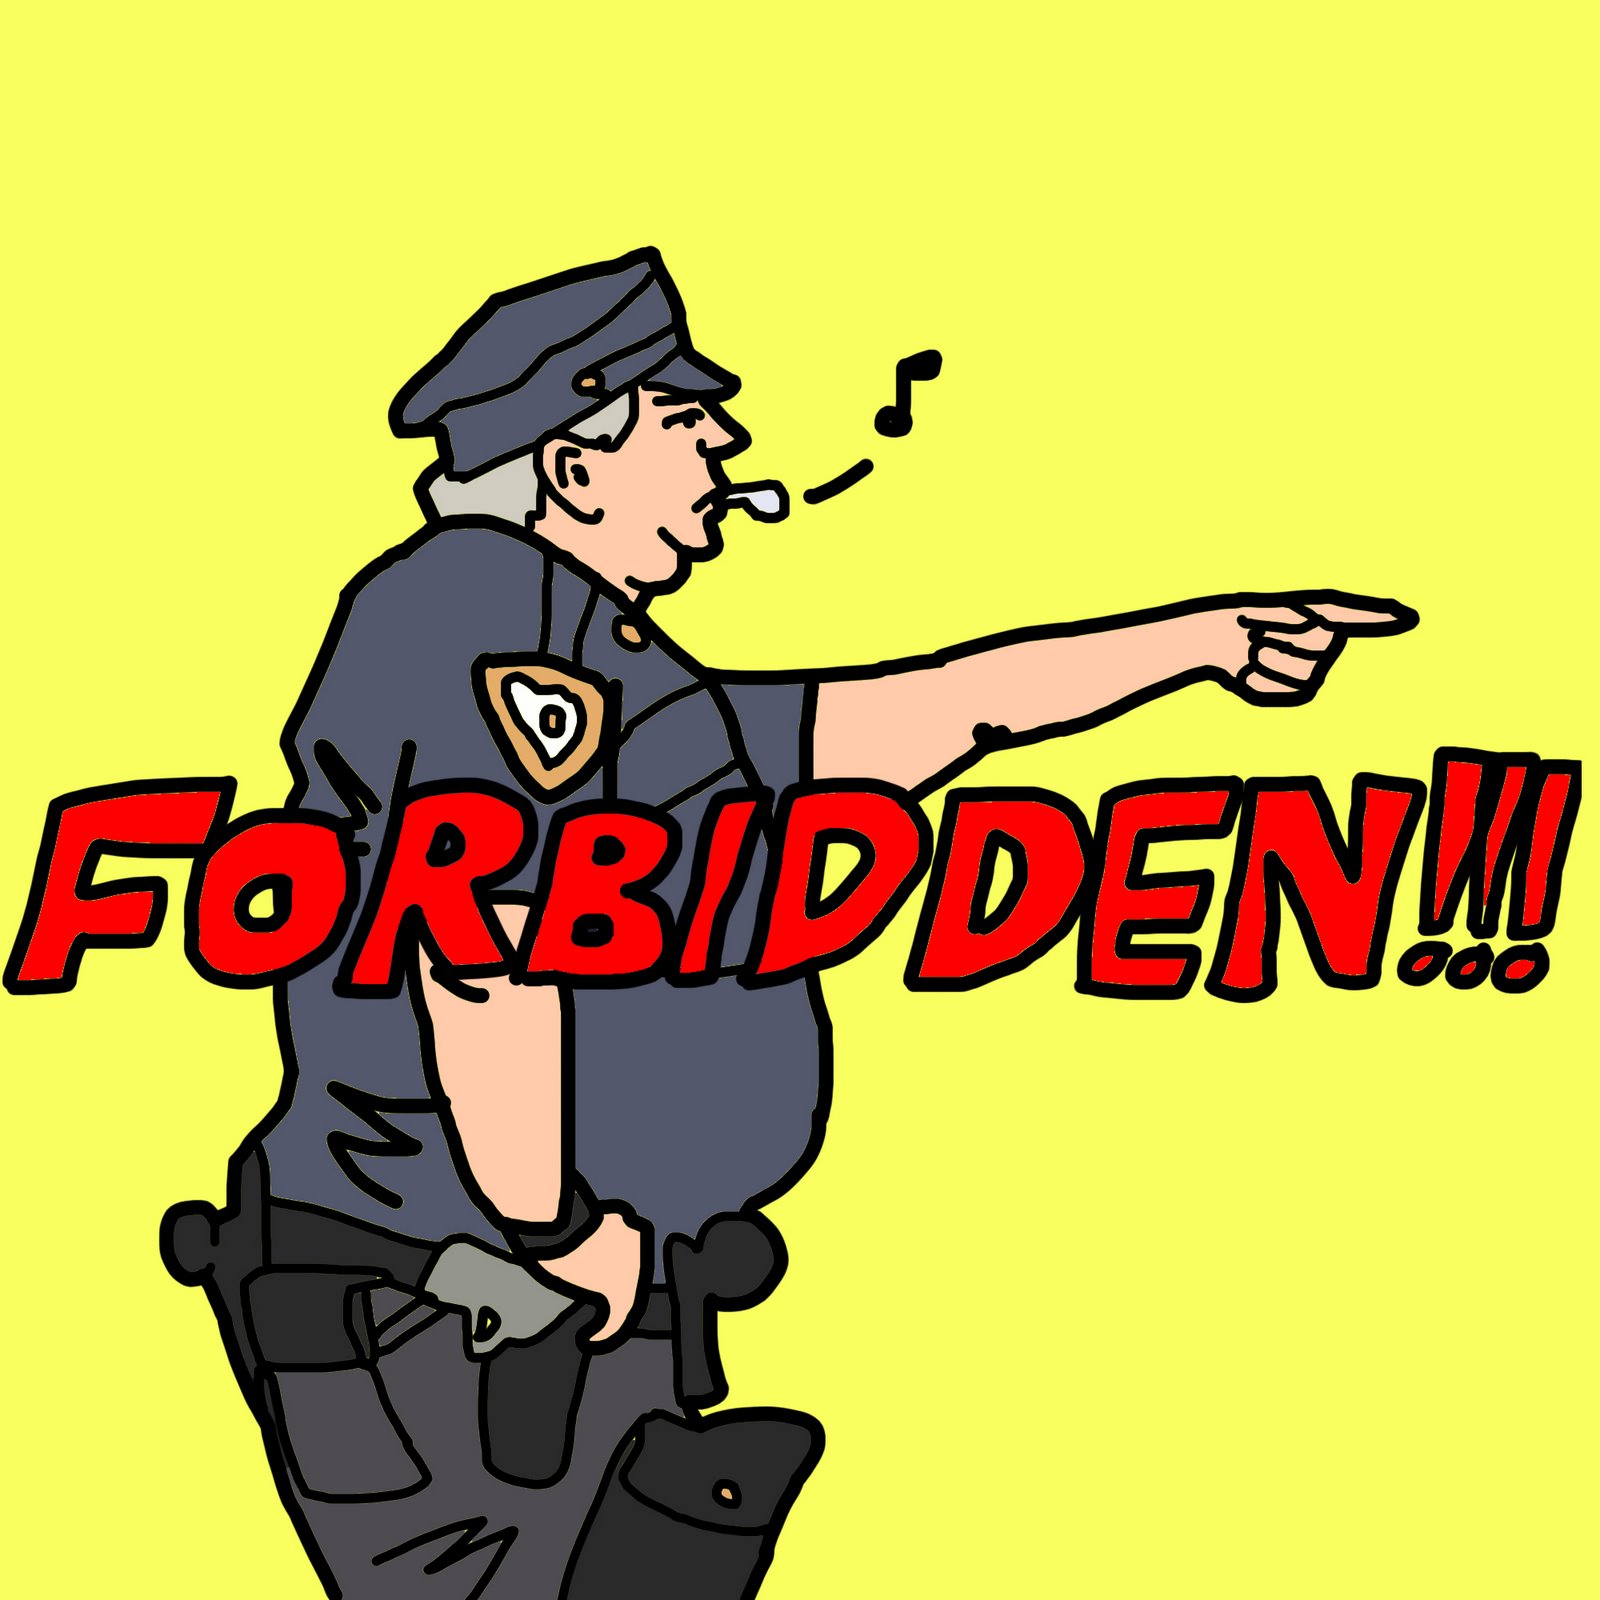 [forbidden.jpg]